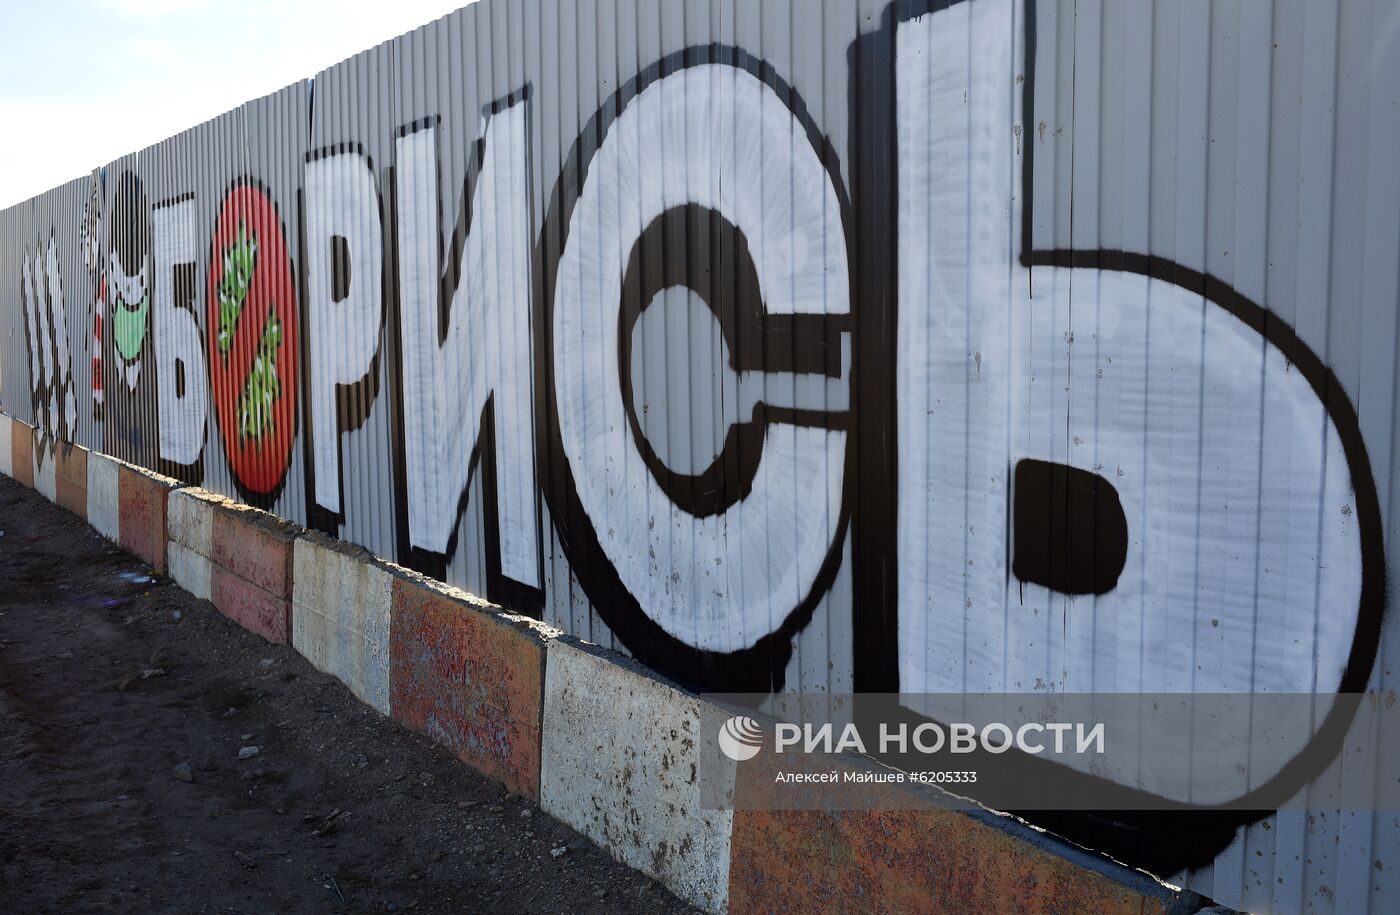 Фанаты "Спартака" нарисовали граффити в поддержку больных коронавирусом в Коммунарке